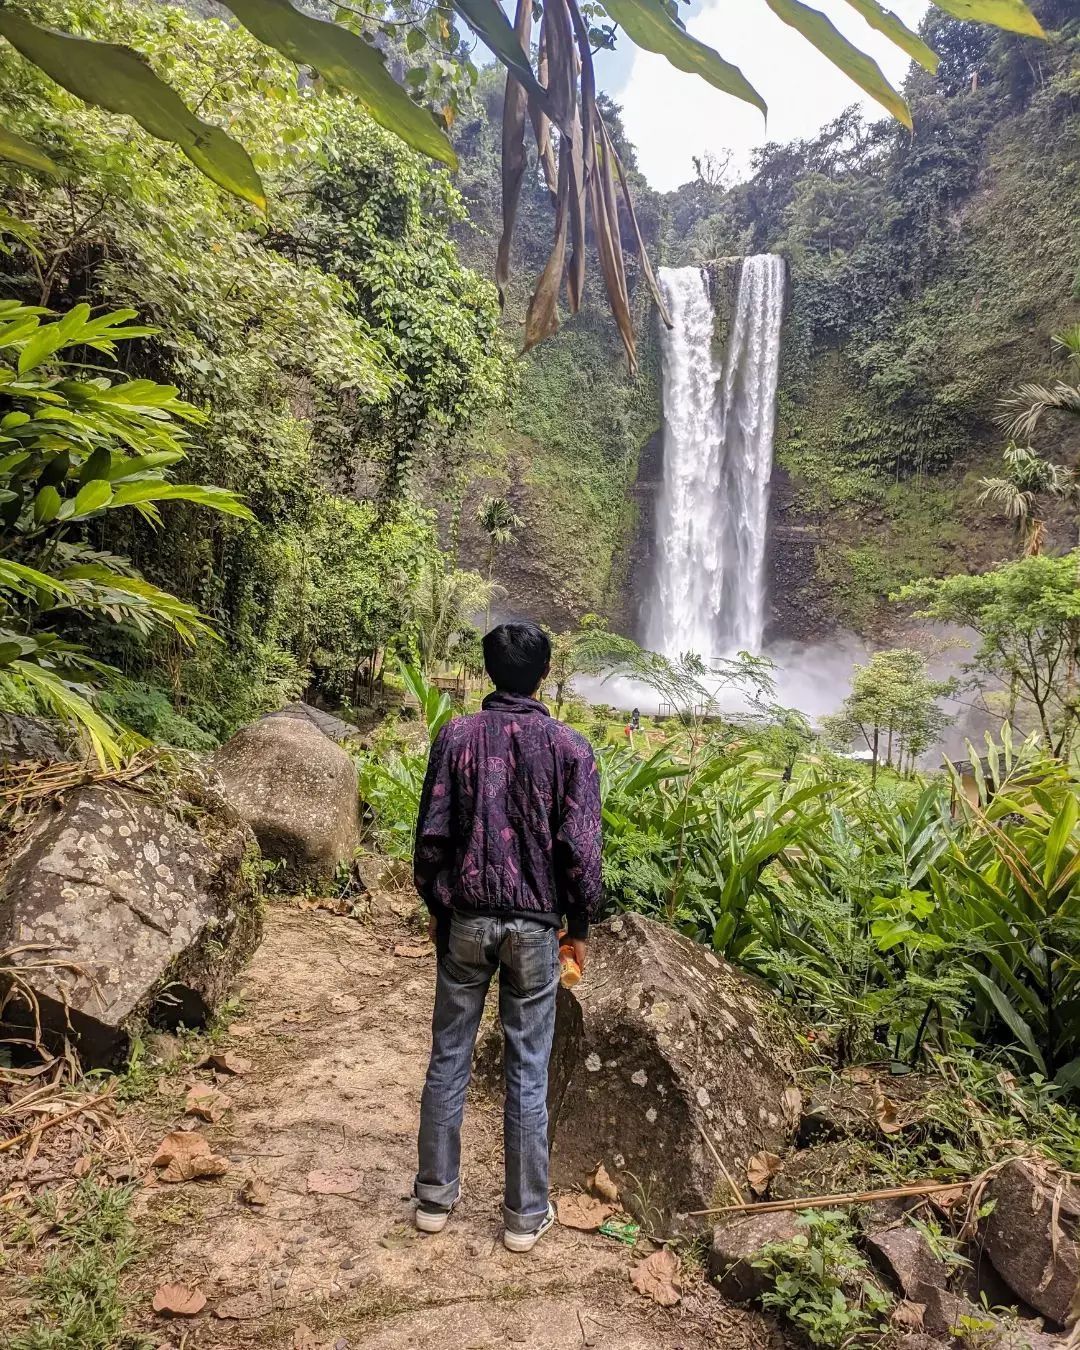 Inilah 5 wisata Garut Jawa Barat murah meriah dan cocok untuk healing / Instagram garutkeren.id